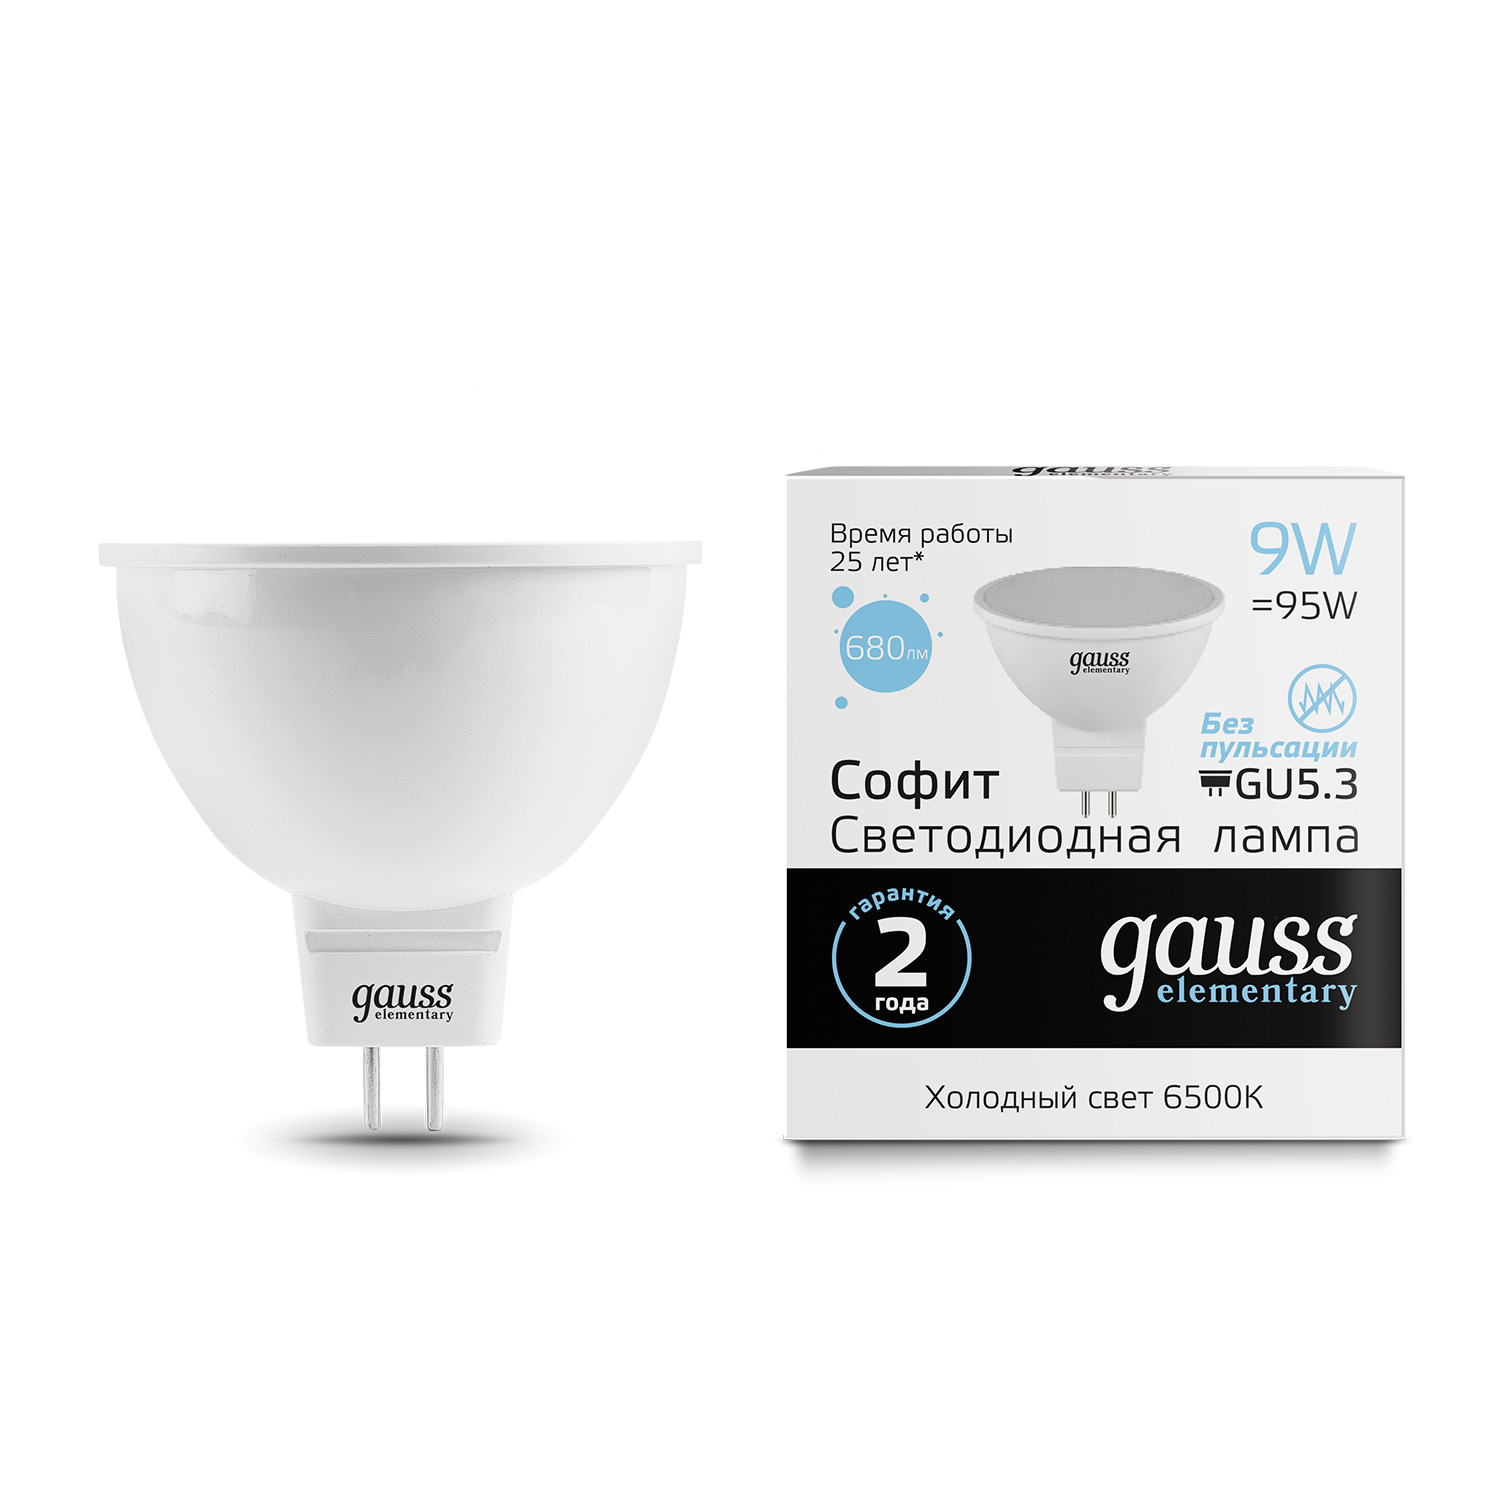 Лампа Gauss LED Elementary MR16 GU5.3 9W 6500K gauss led elementary mr16 gu5 3 7w 6500k 1 10 100